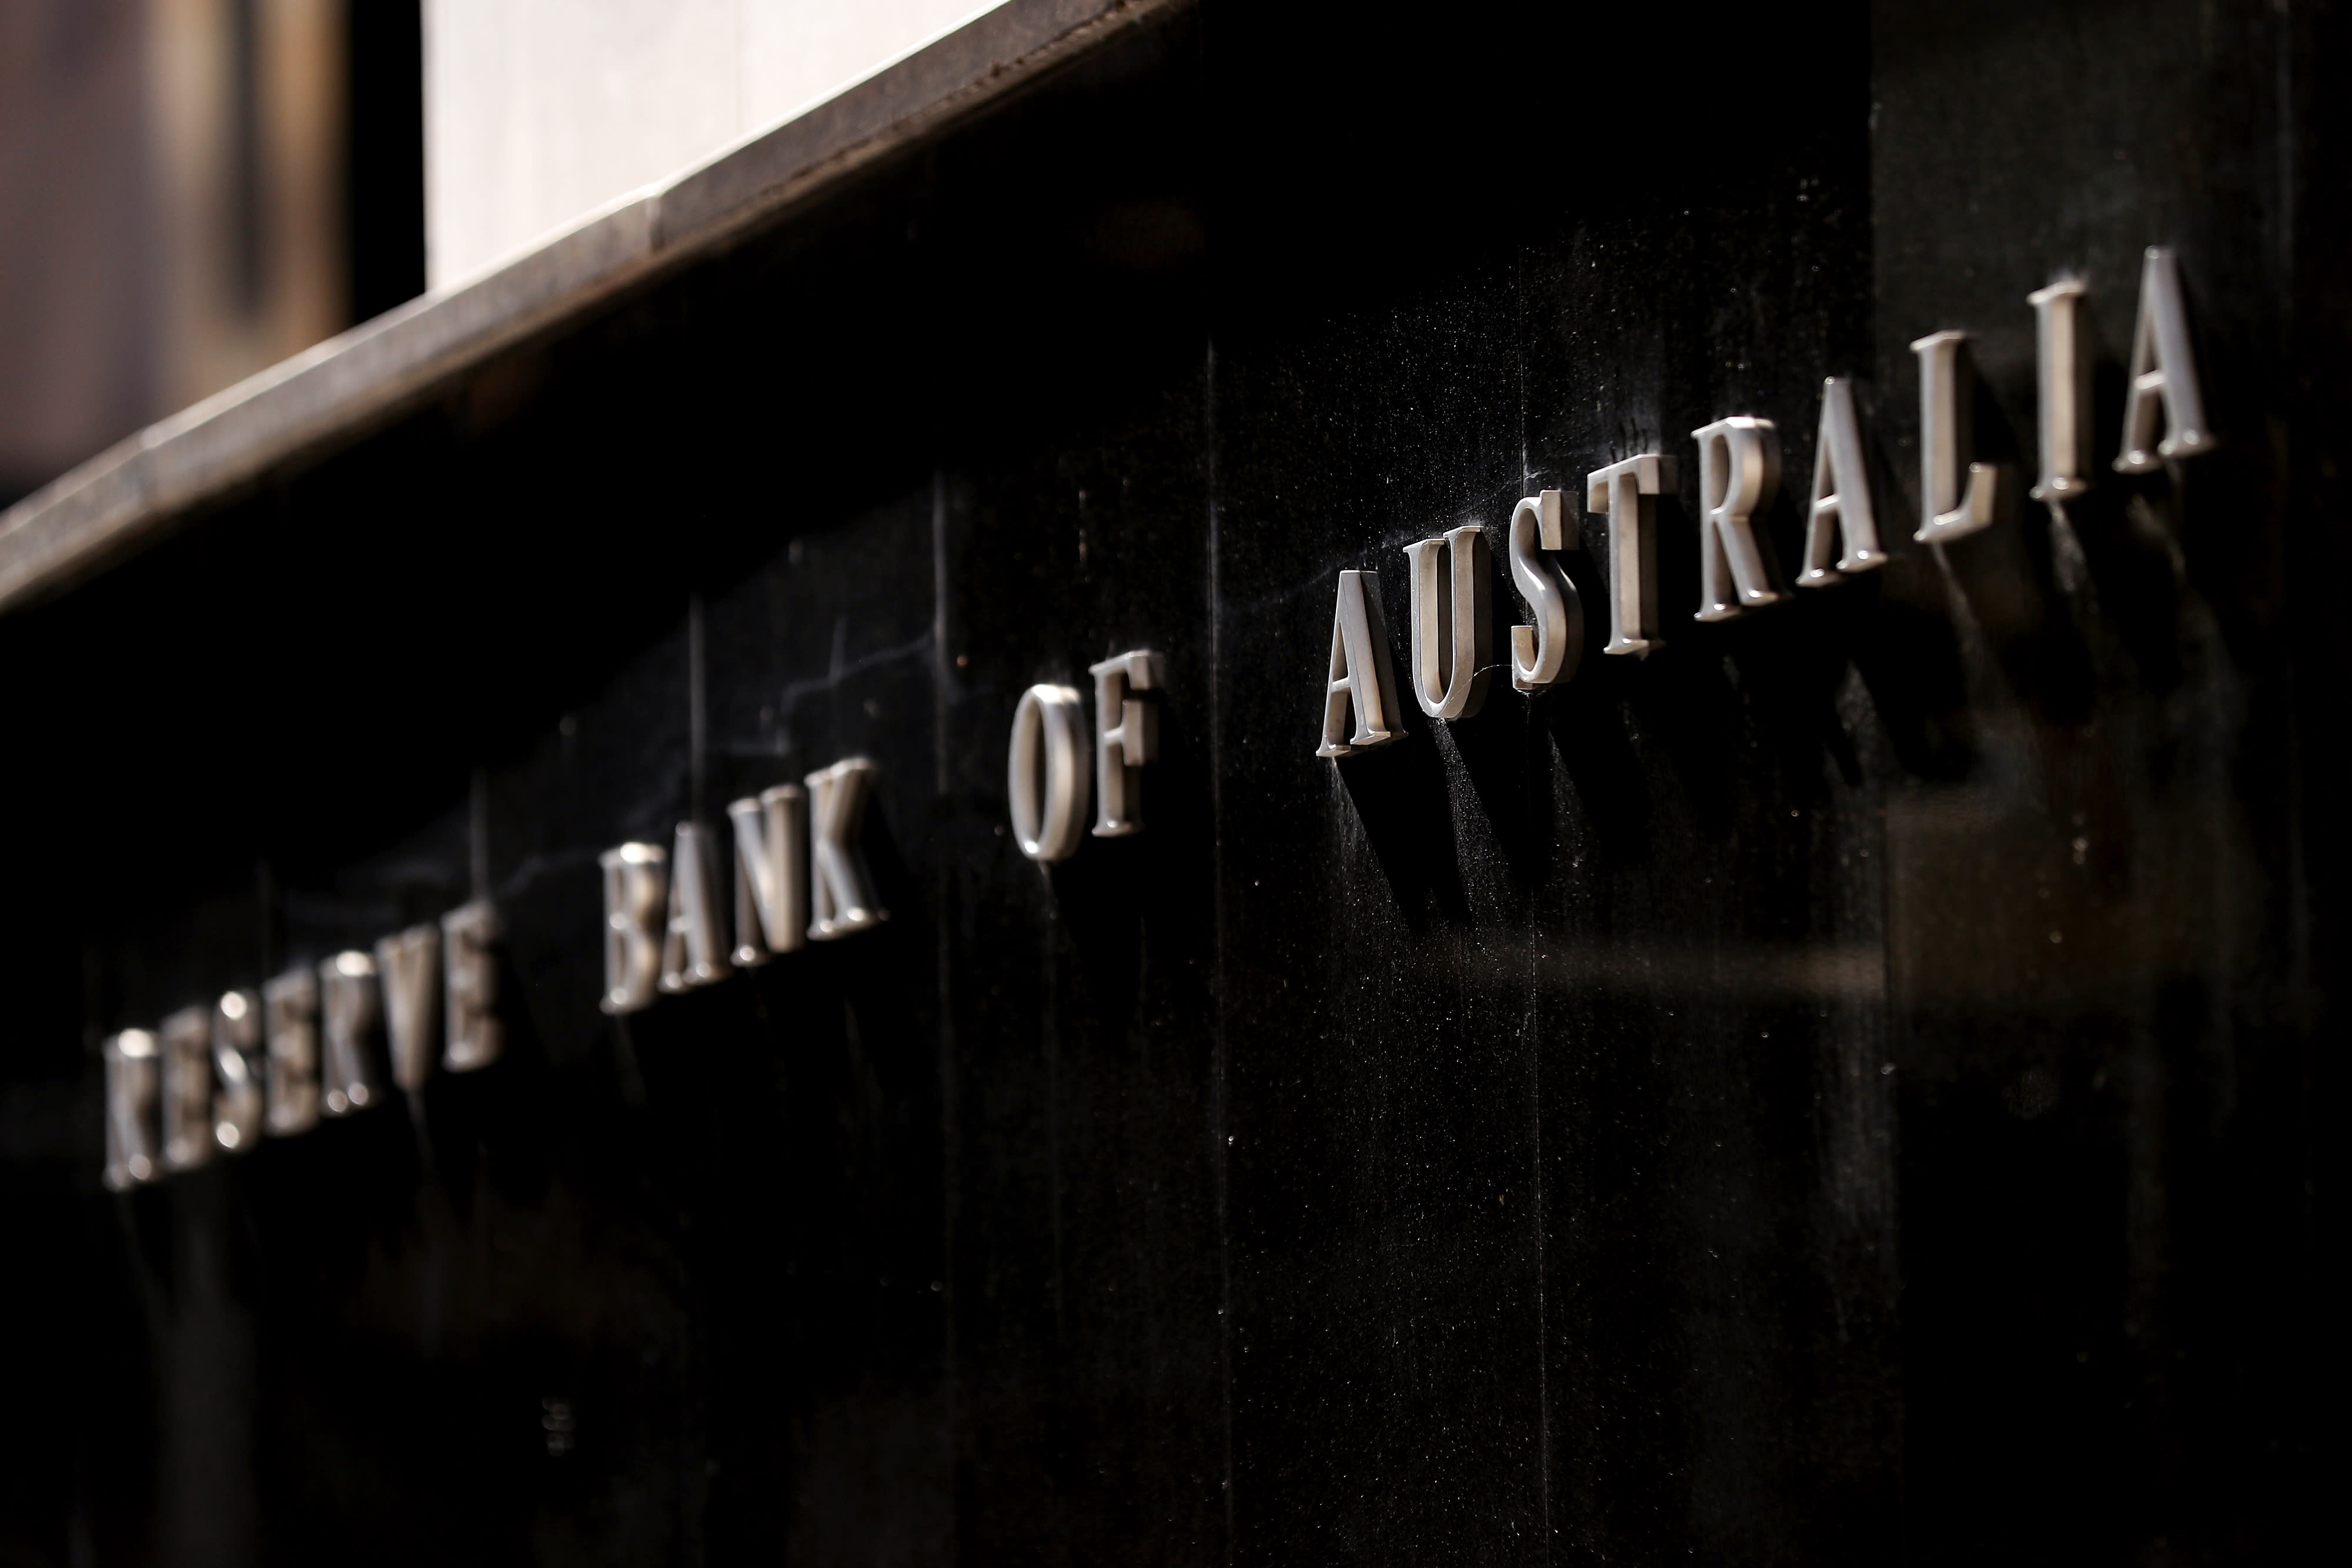 Aziatische markten zijn meestal hoger omdat de Australische centrale bank de rentetarieven stabiel houdt en de Australische dollar lager is